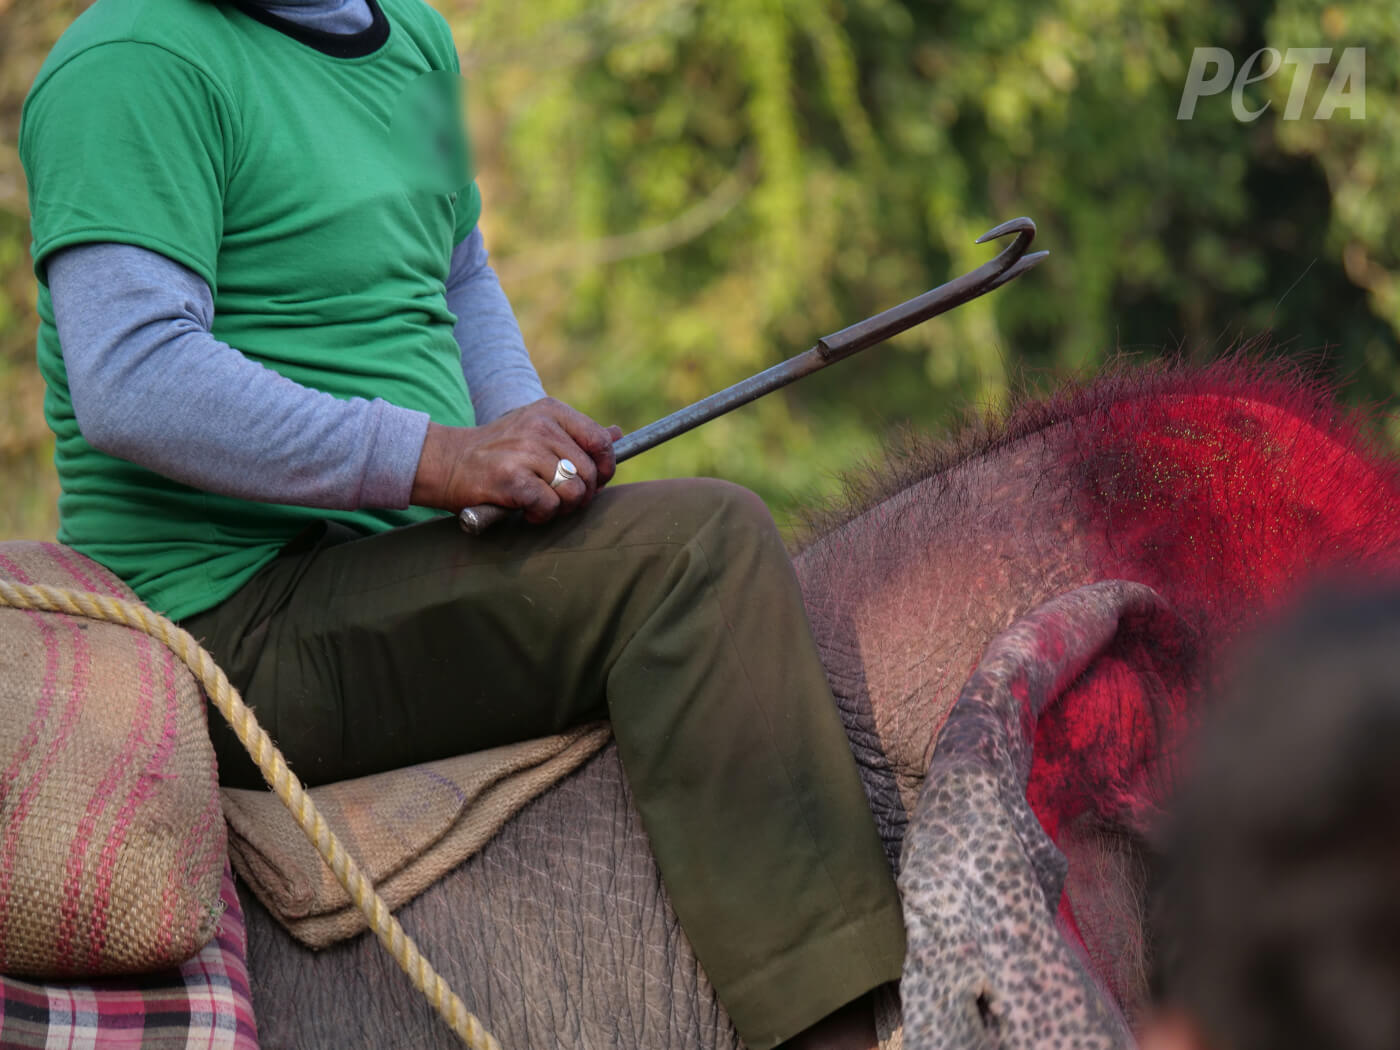 Wreedheid voor toerisme: olifanten worden tot bloedens toe geslagen op olifantenfestival in Nepal